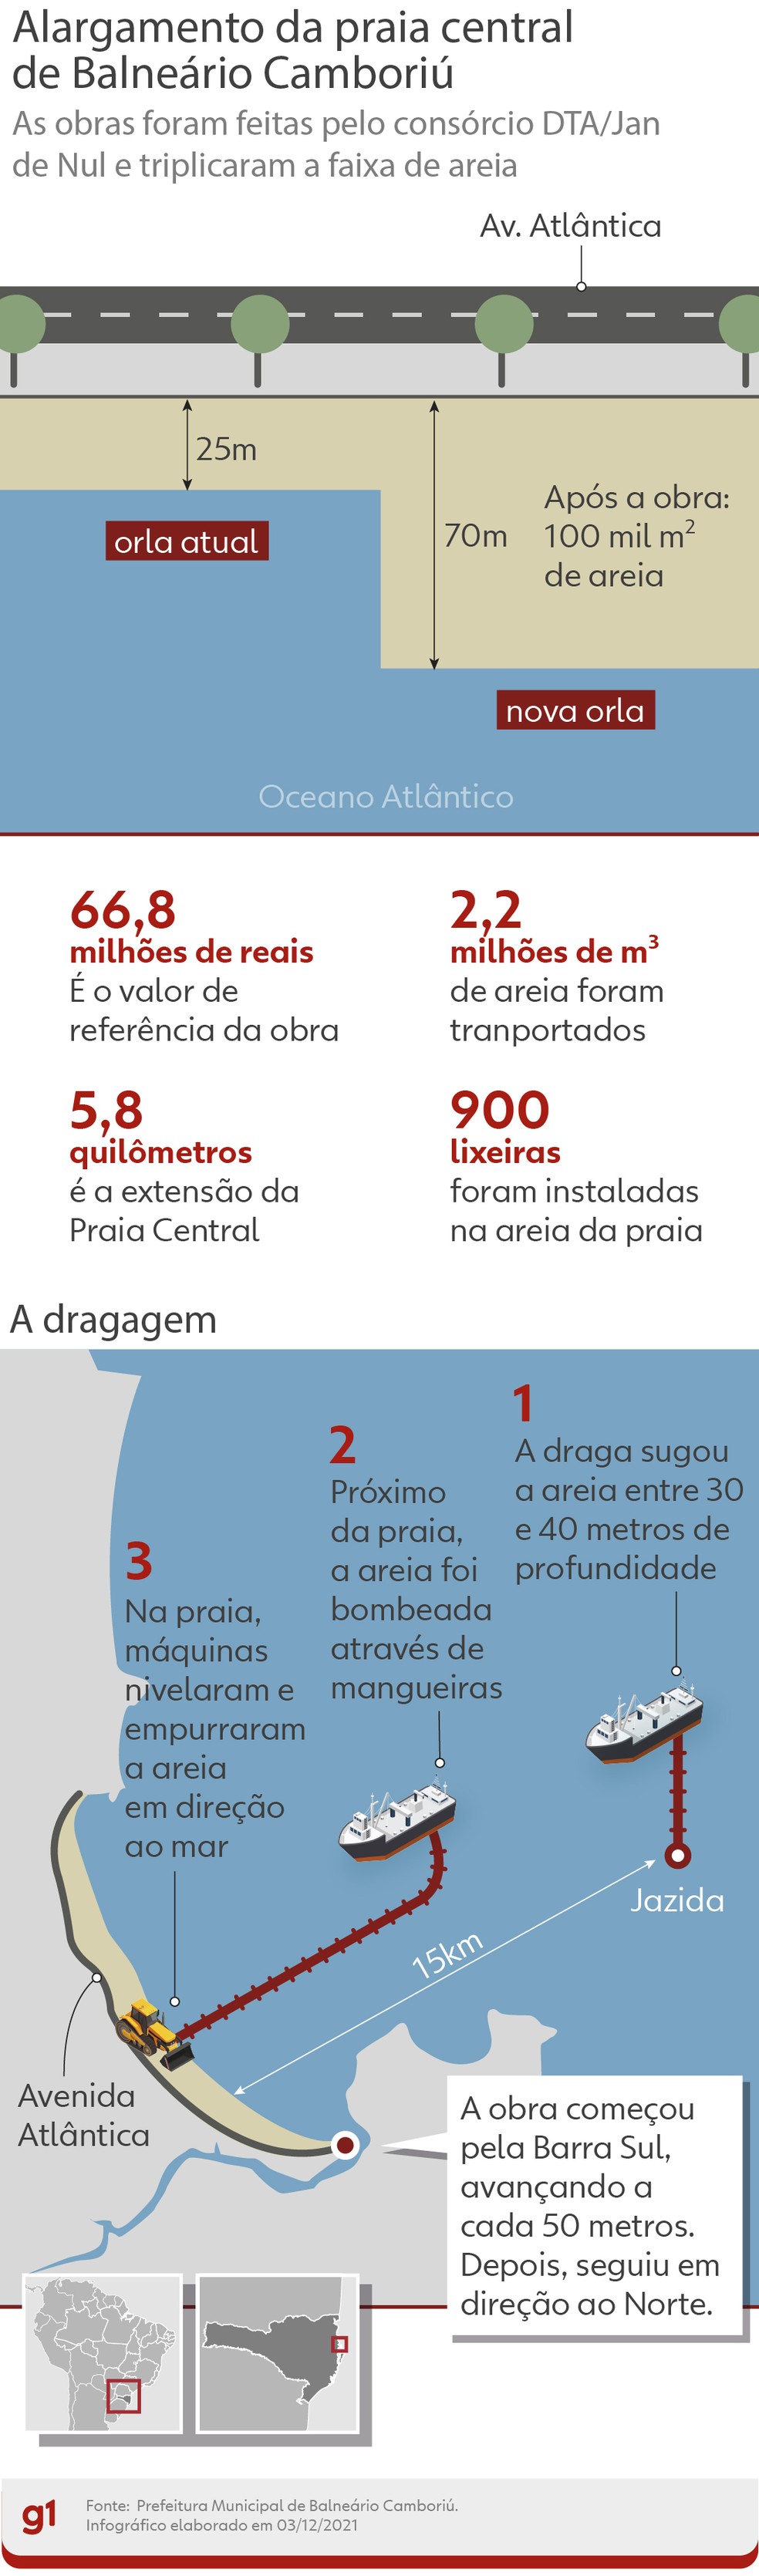 Infográfico mostra detalhes da obra de alargamento da faixa de areia da Praia Central, em Balneário Camboriú — Foto: Ben Ami Scopinho/Arte